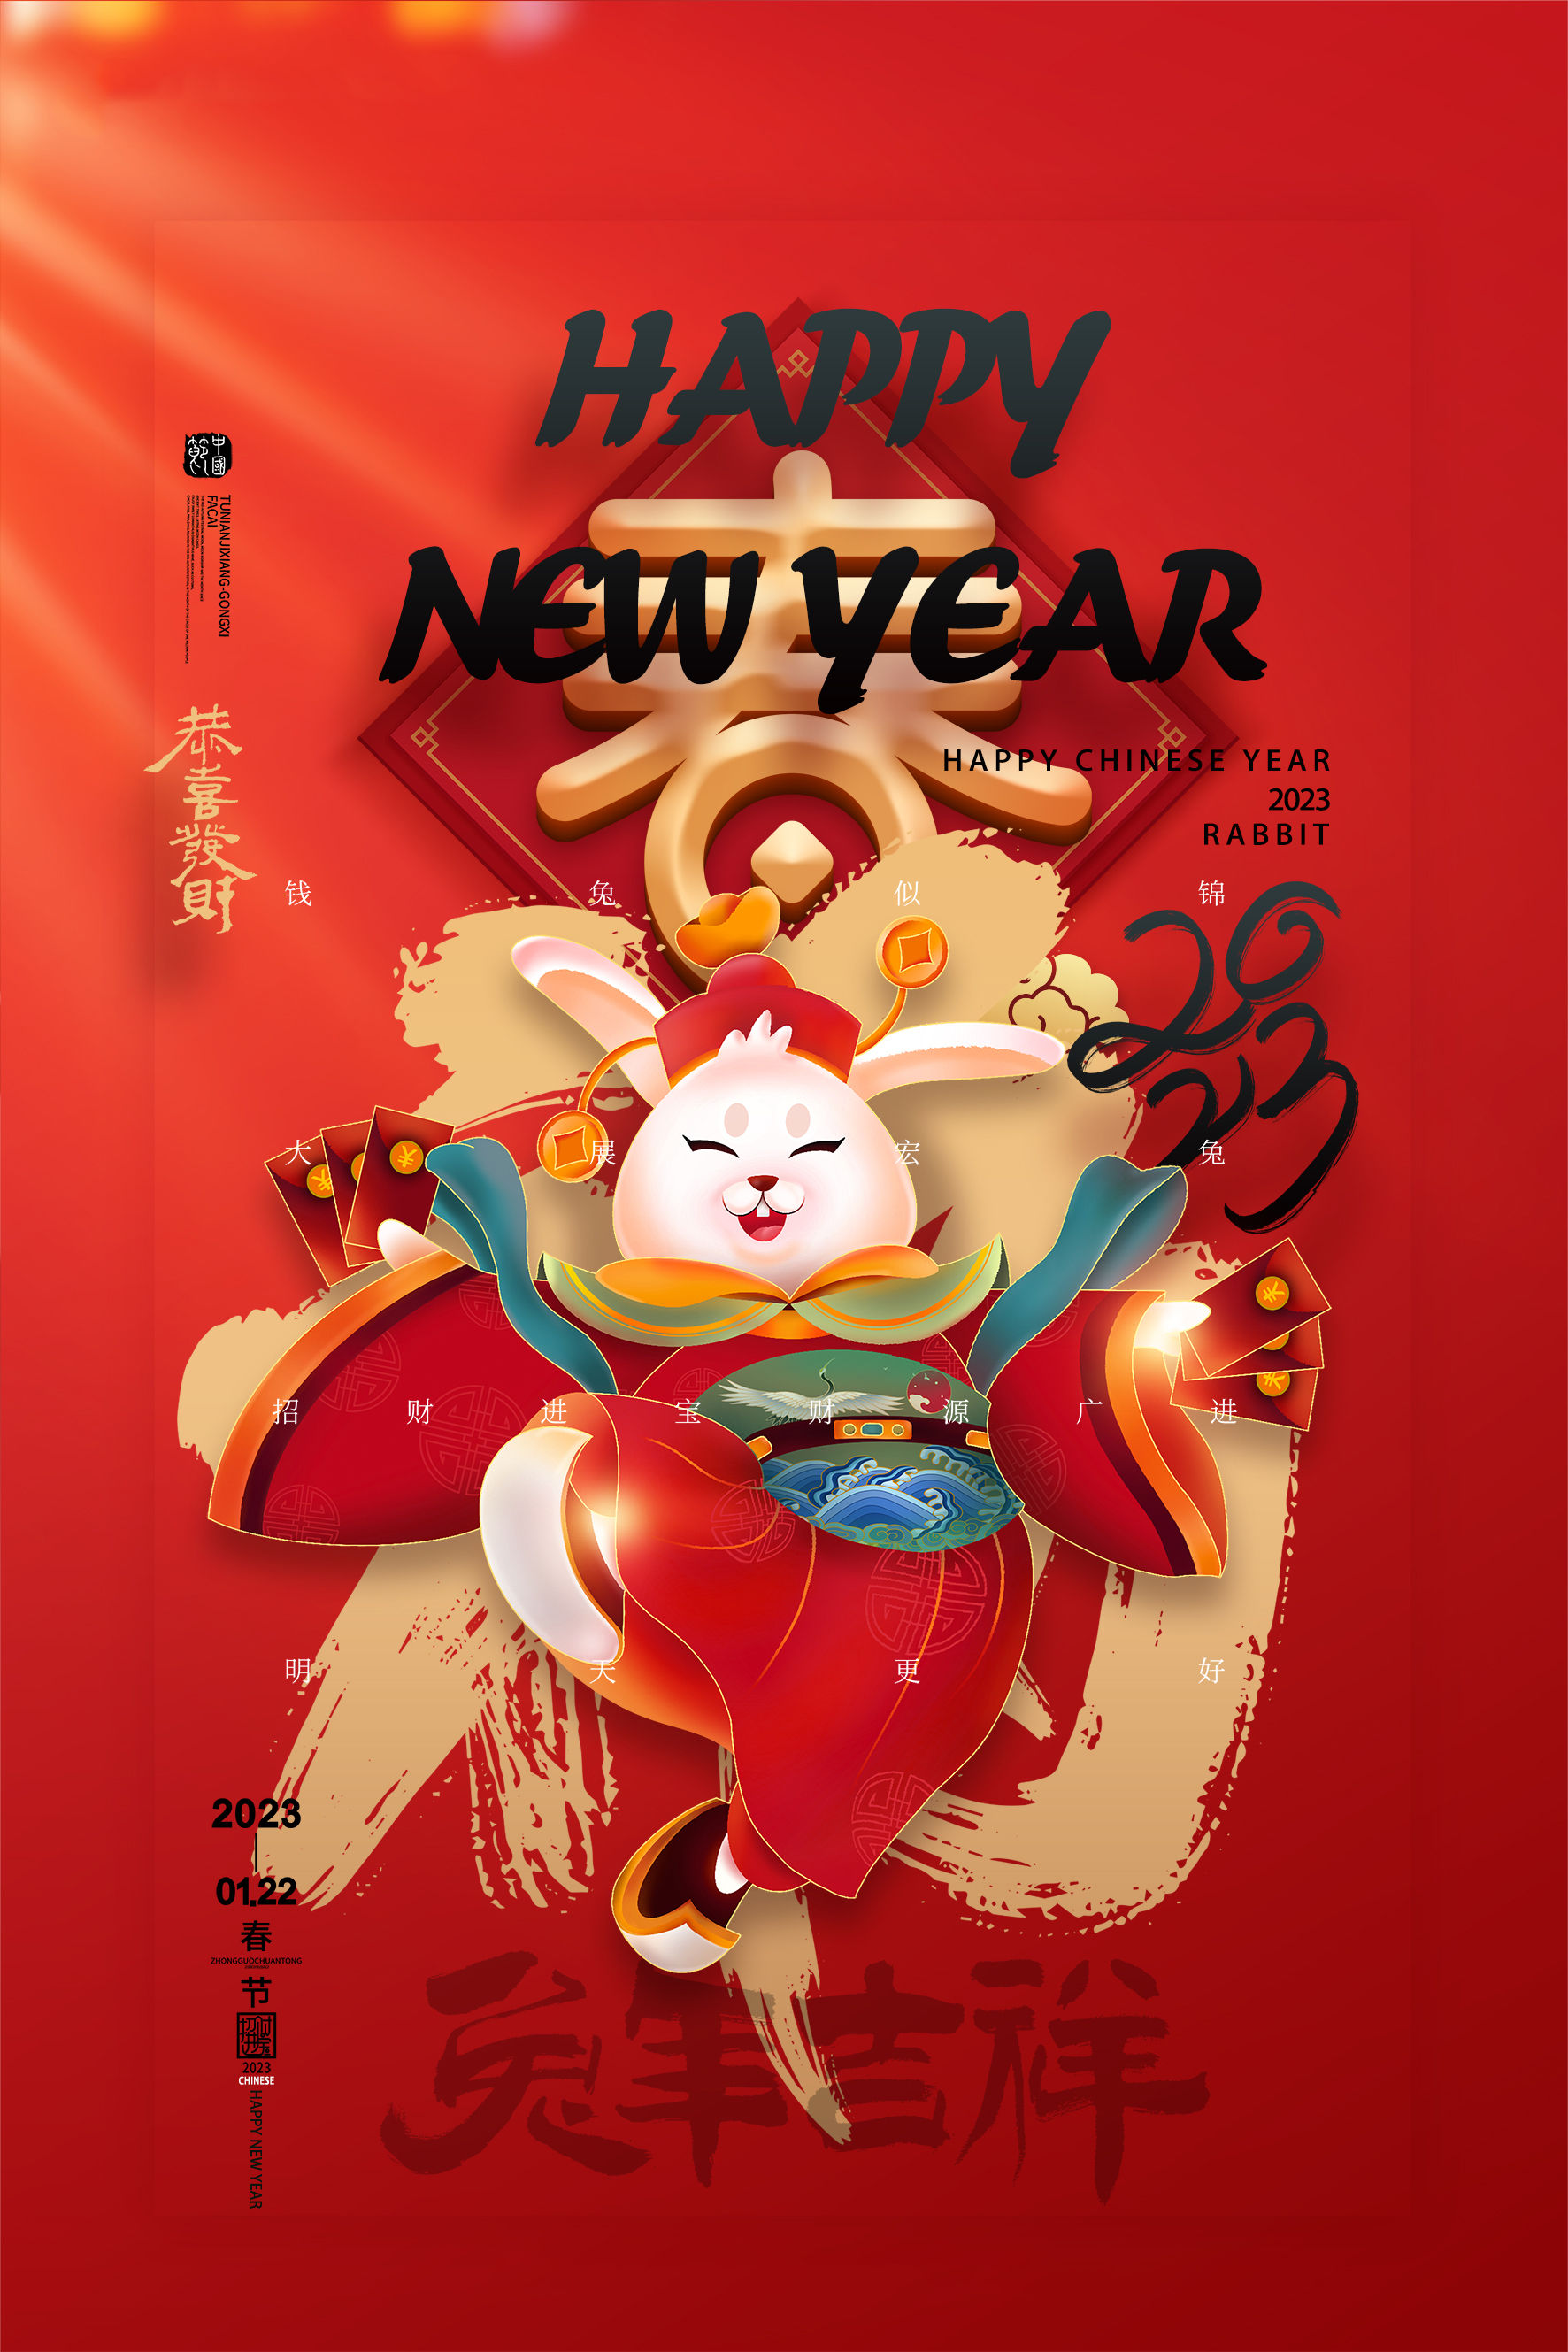 चीनी नव वर्ष की छुट्टियों की सूचना